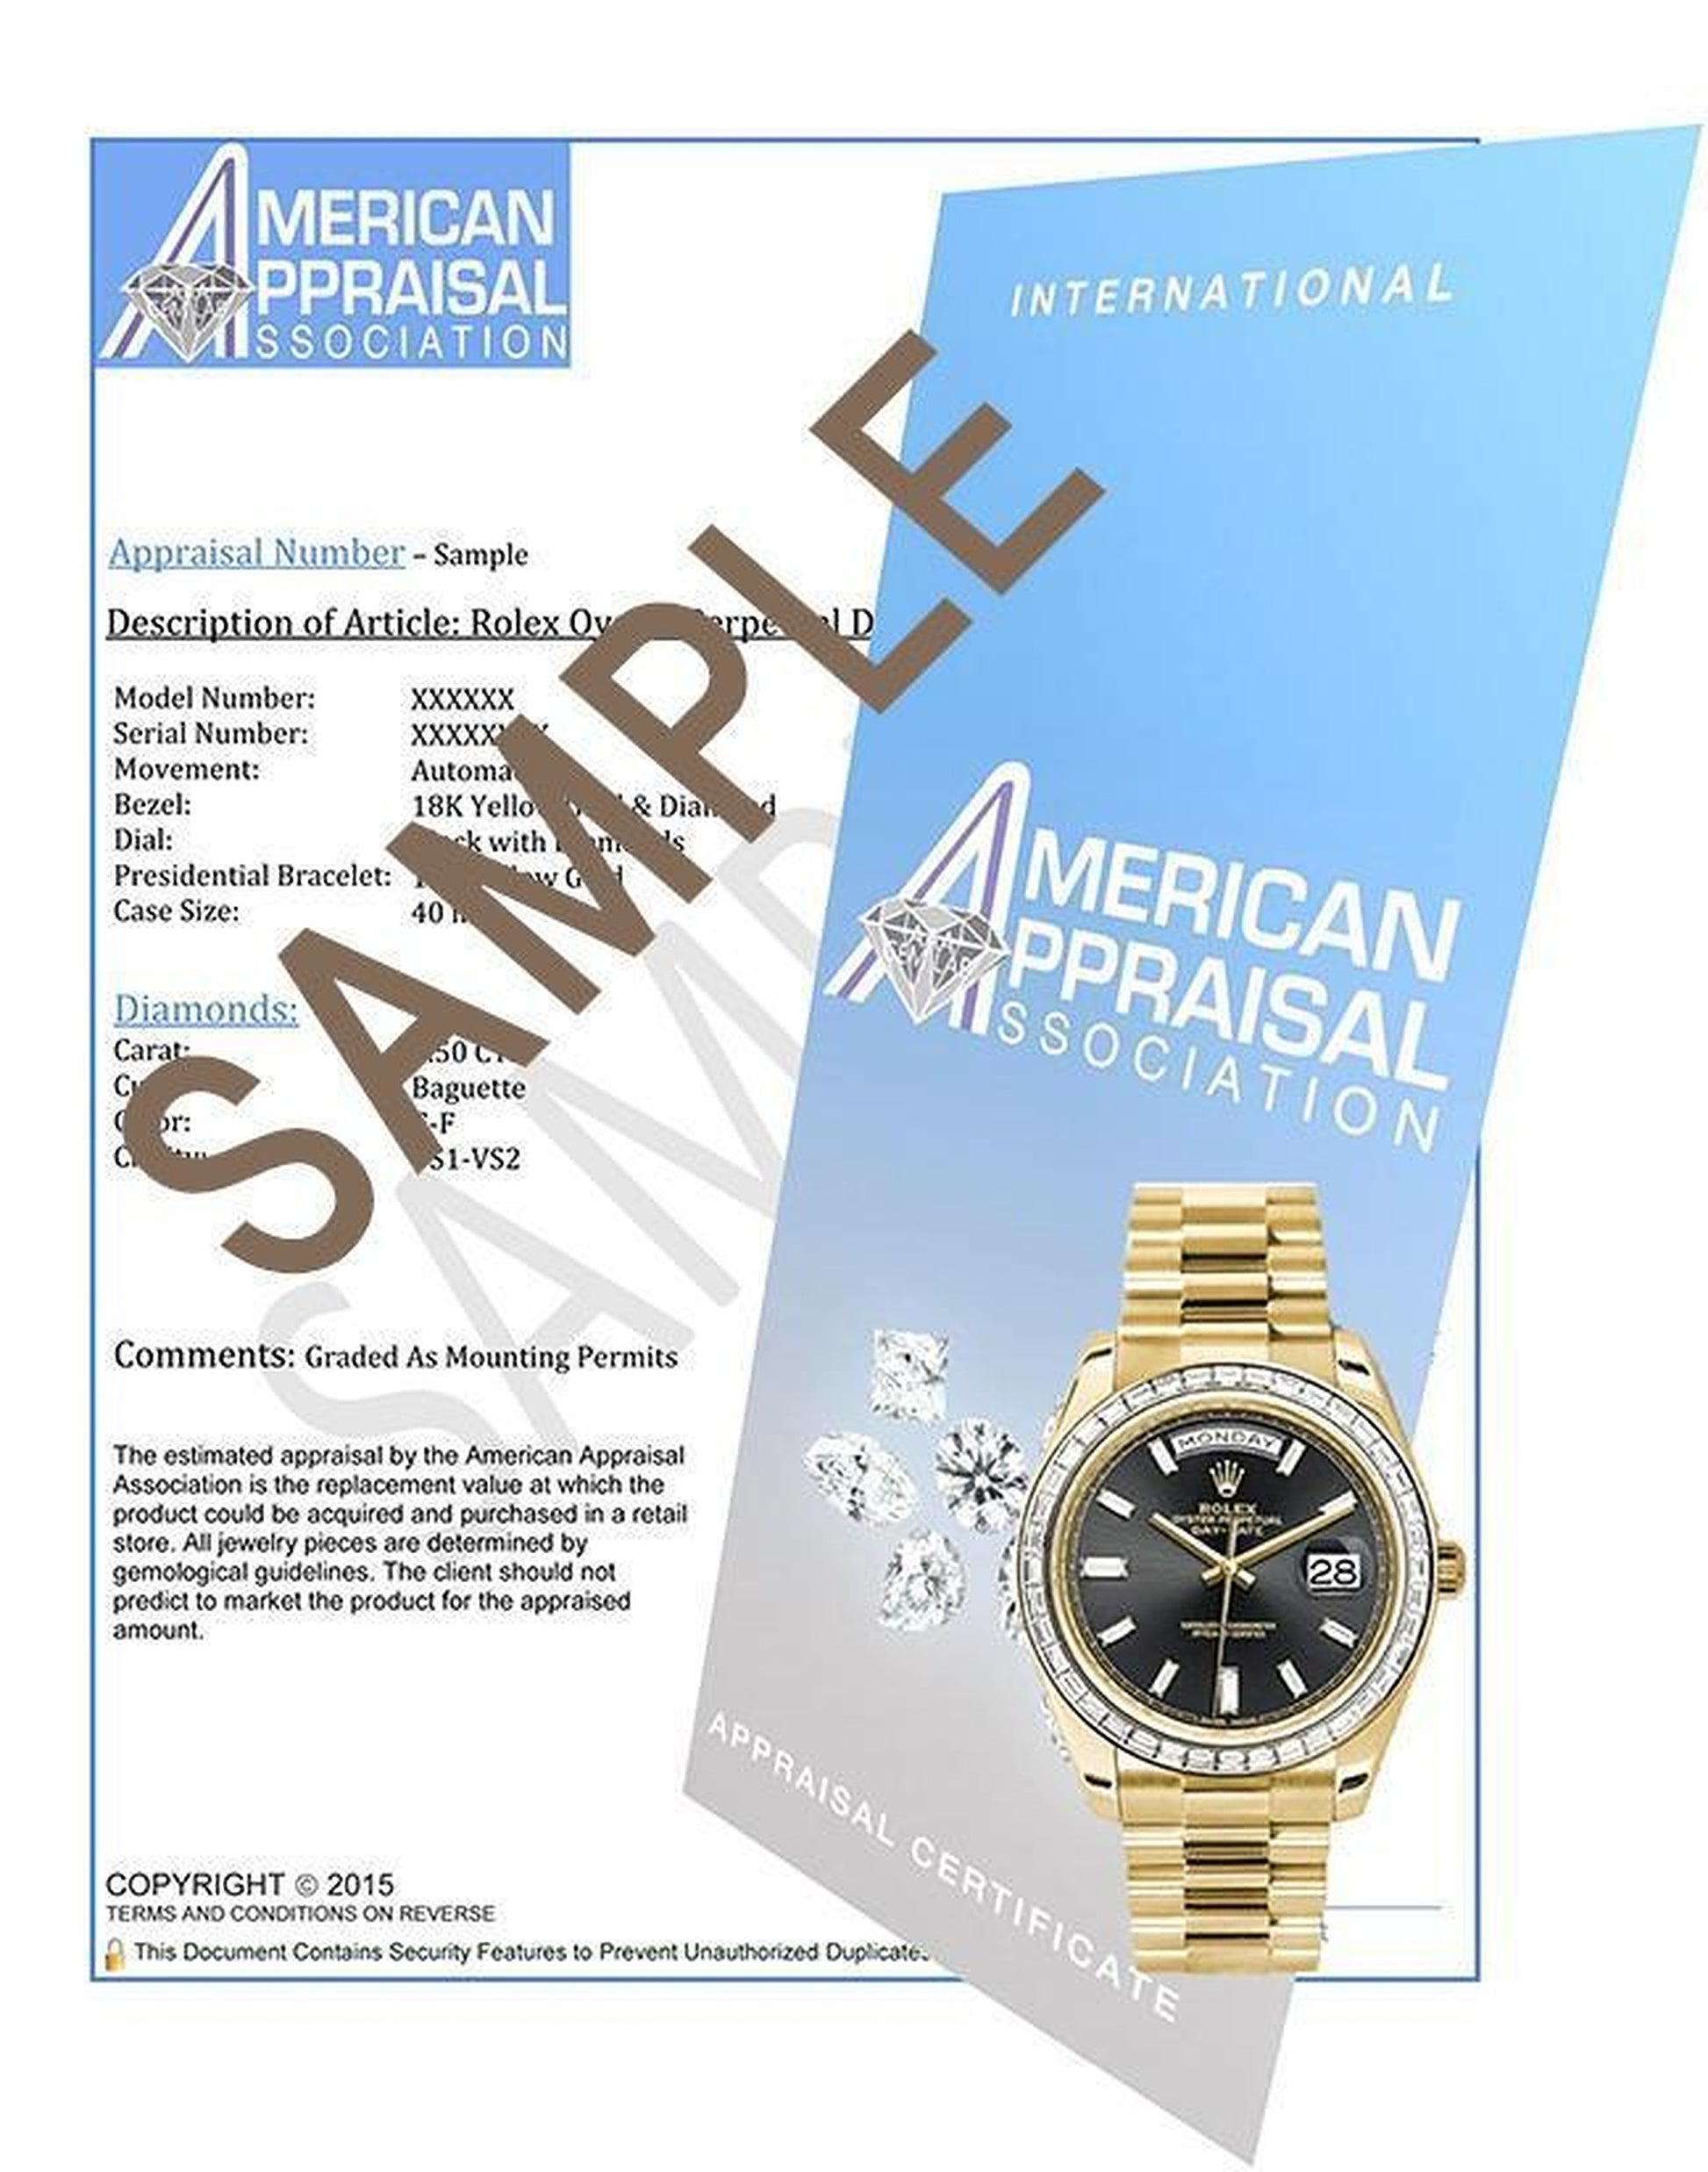 Rolex Datejust 31mm Blue Roman Dial 3.30ct Diamond Bezel/Bracelet Steel Watch 178240